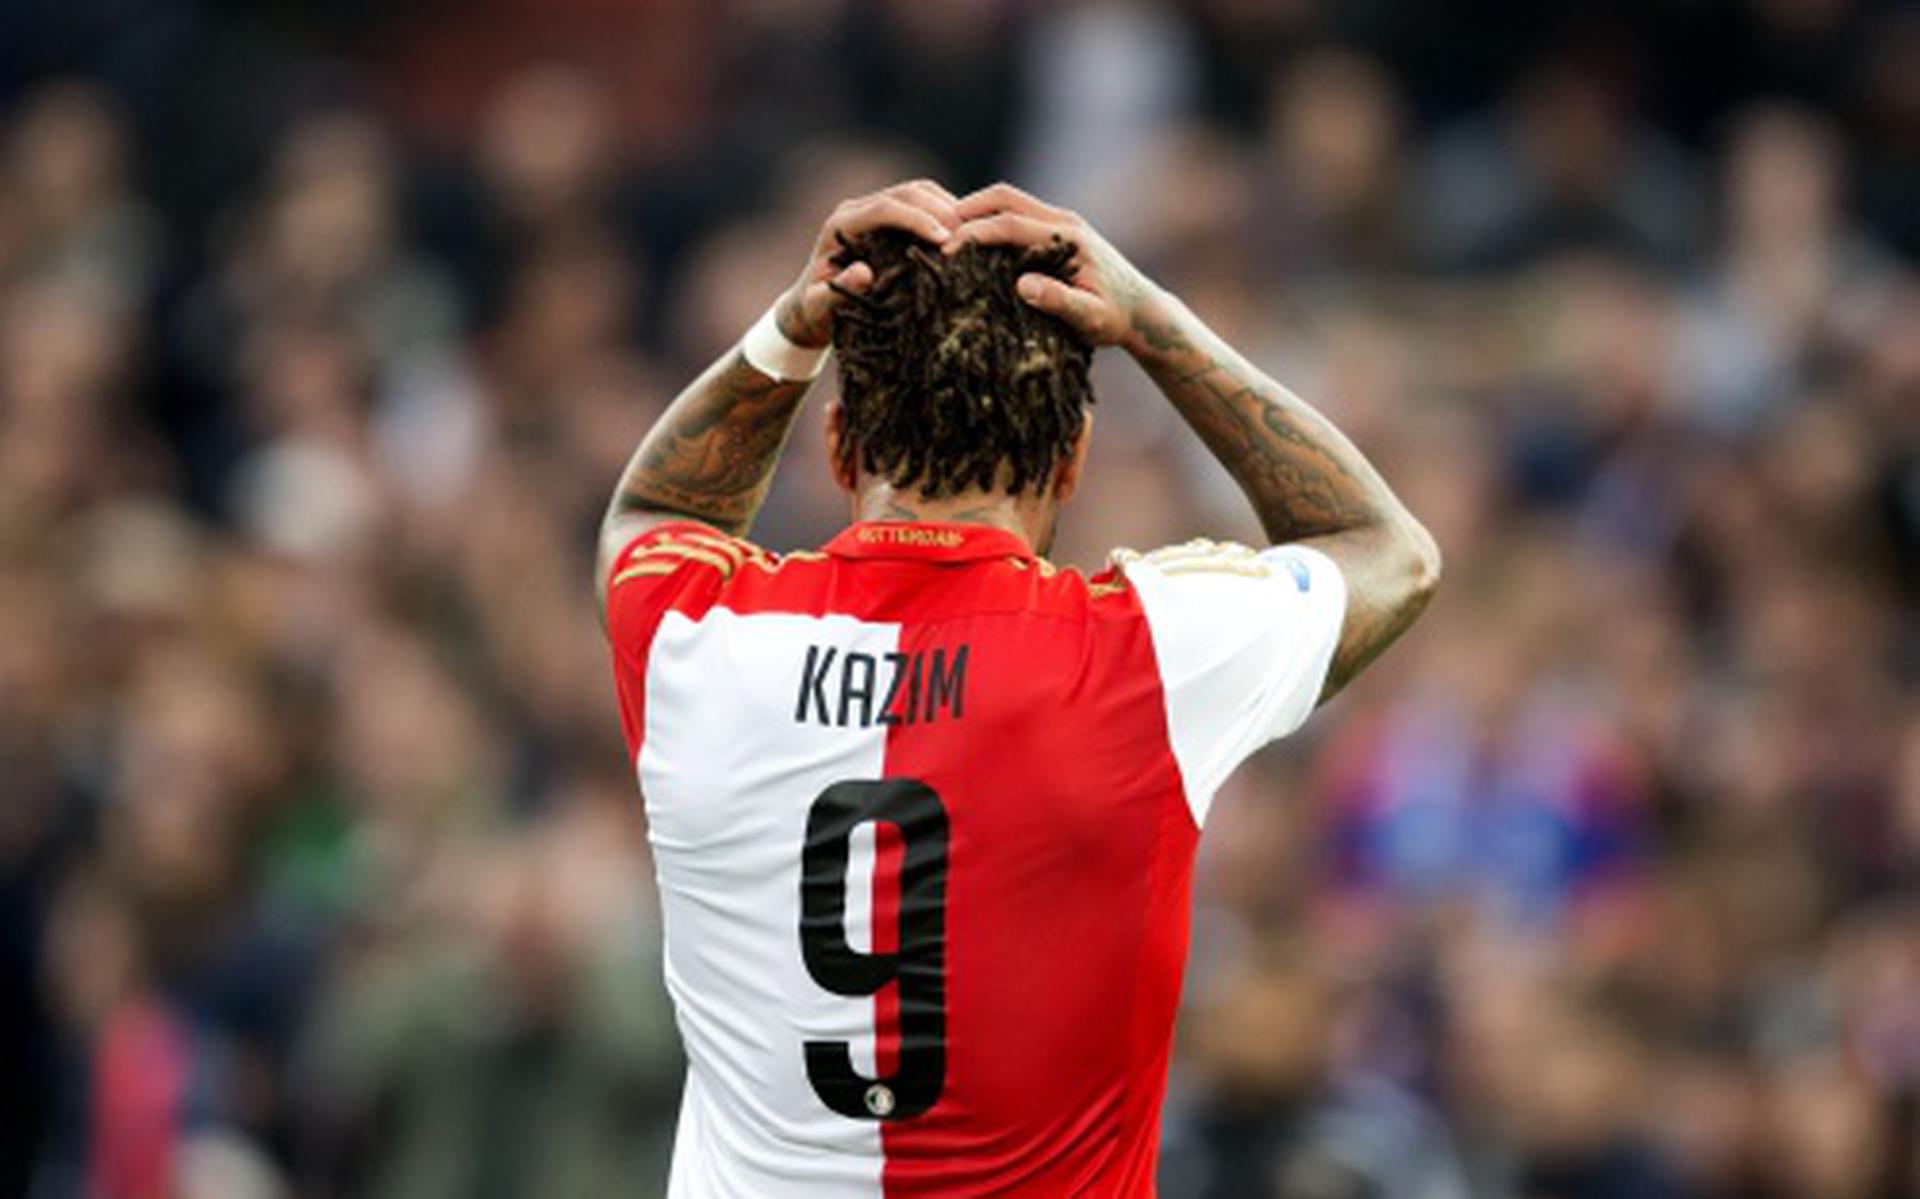 Feyenoord zet bedreigende Kazim uit selectie